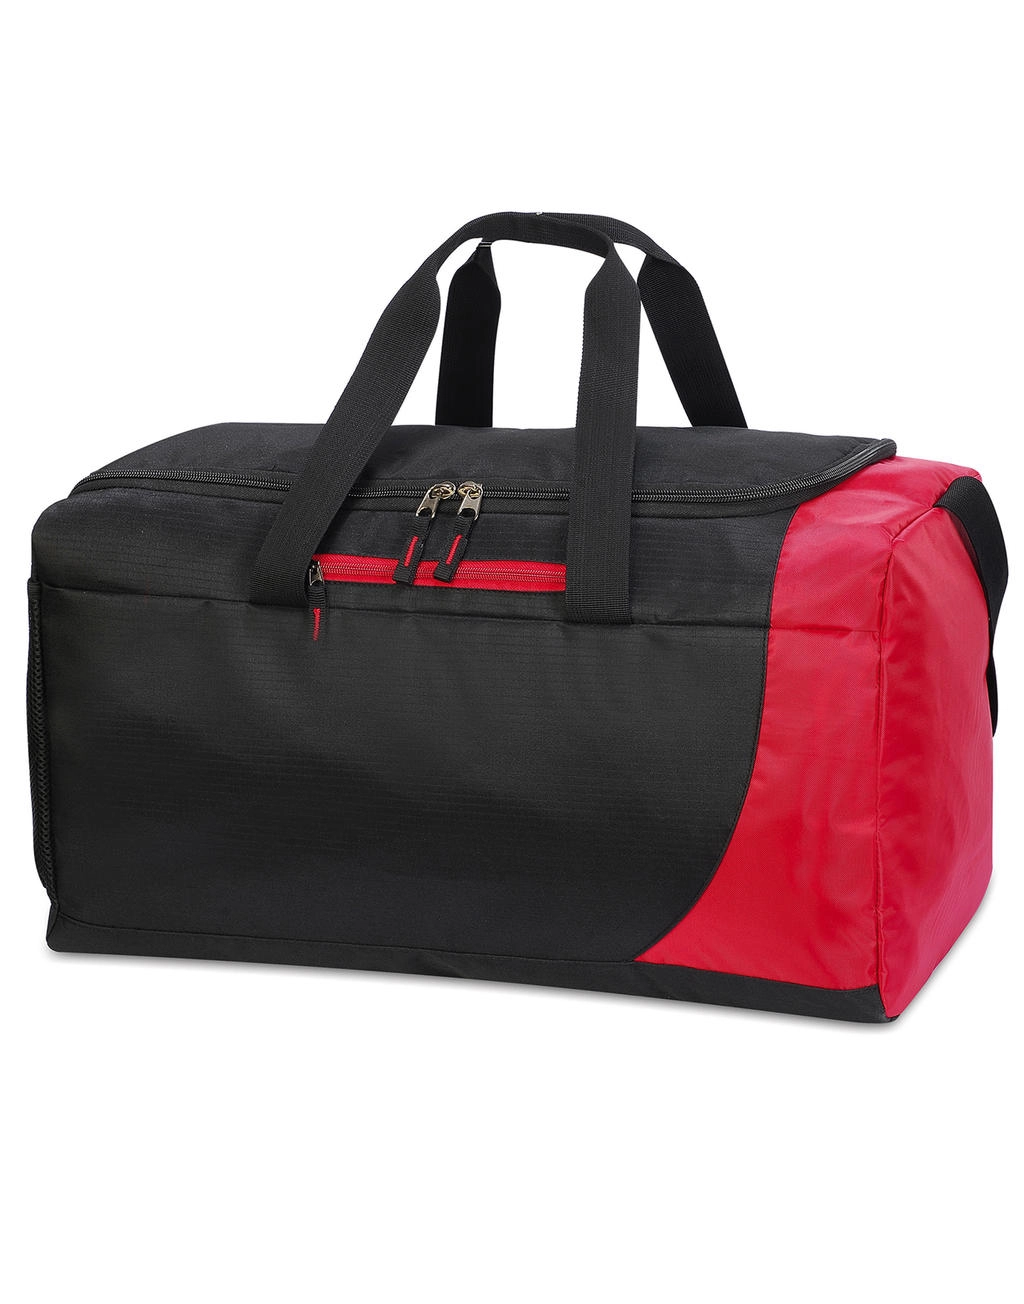 Naxos Sports Kit Bag zum Besticken und Bedrucken in der Farbe Black/Red mit Ihren Logo, Schriftzug oder Motiv.